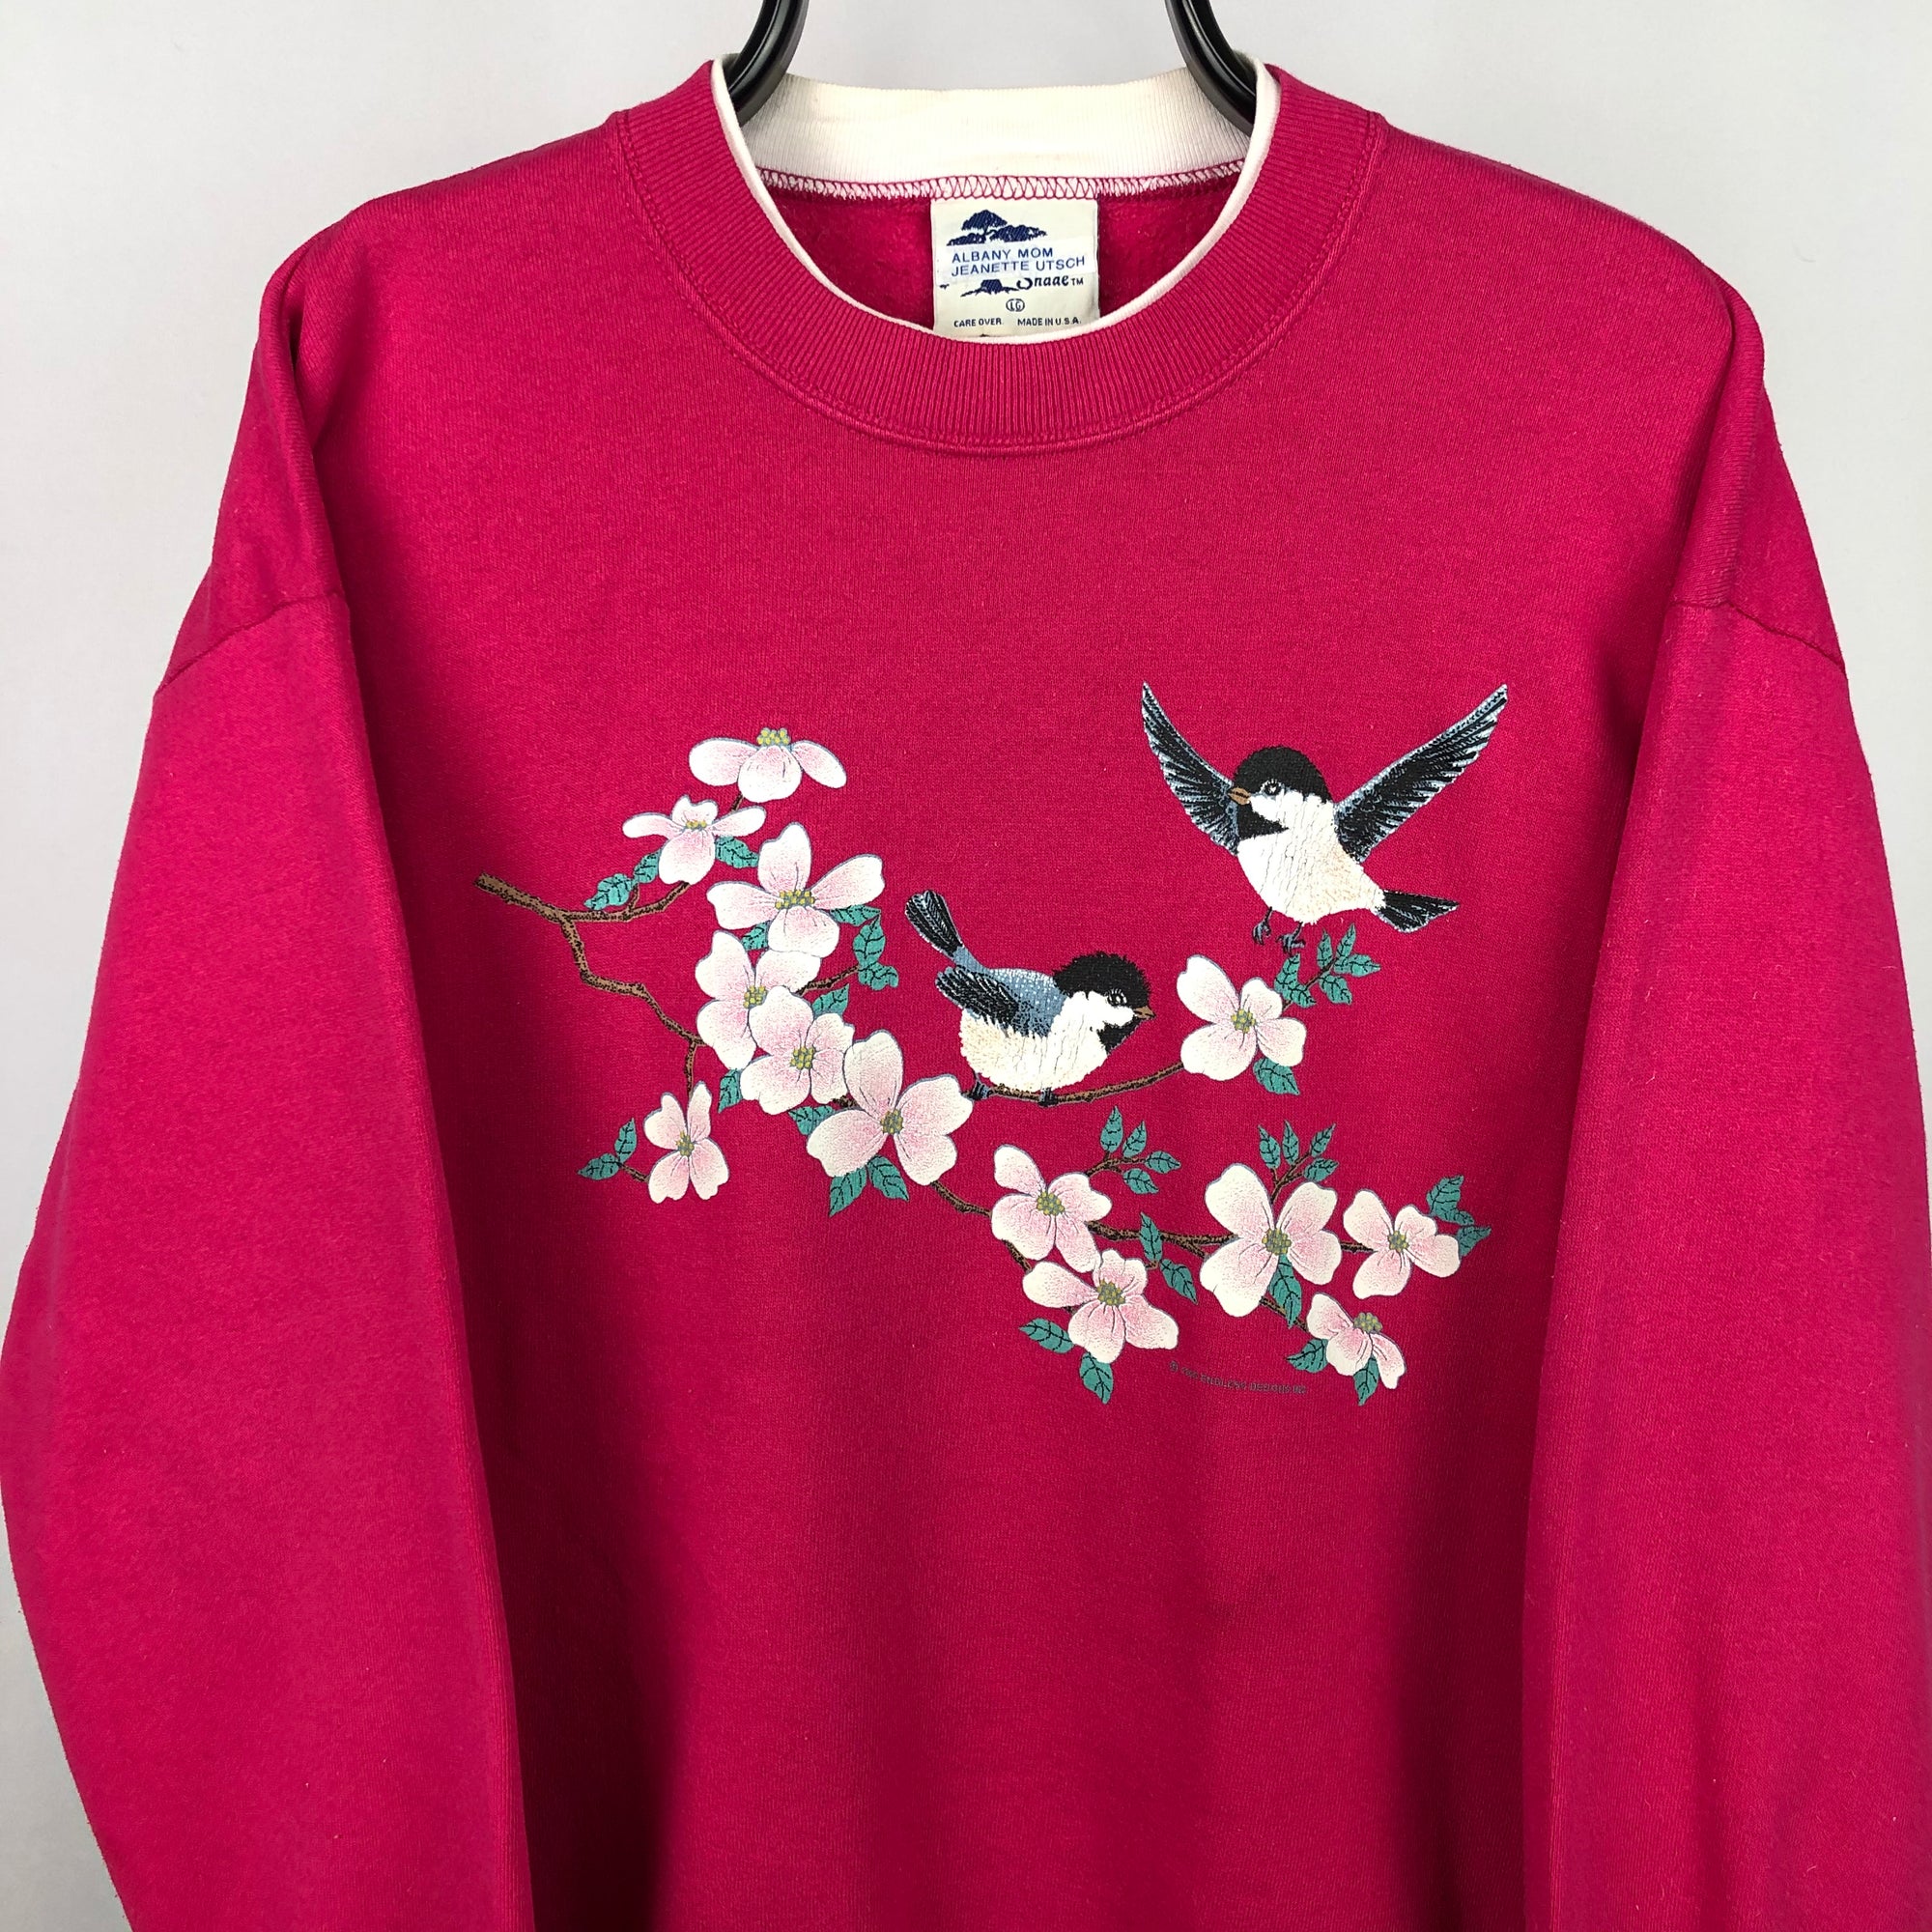 Vintage 90s Birds + Flowers Sweatshirt in Pink - Men's Large/Women's XL